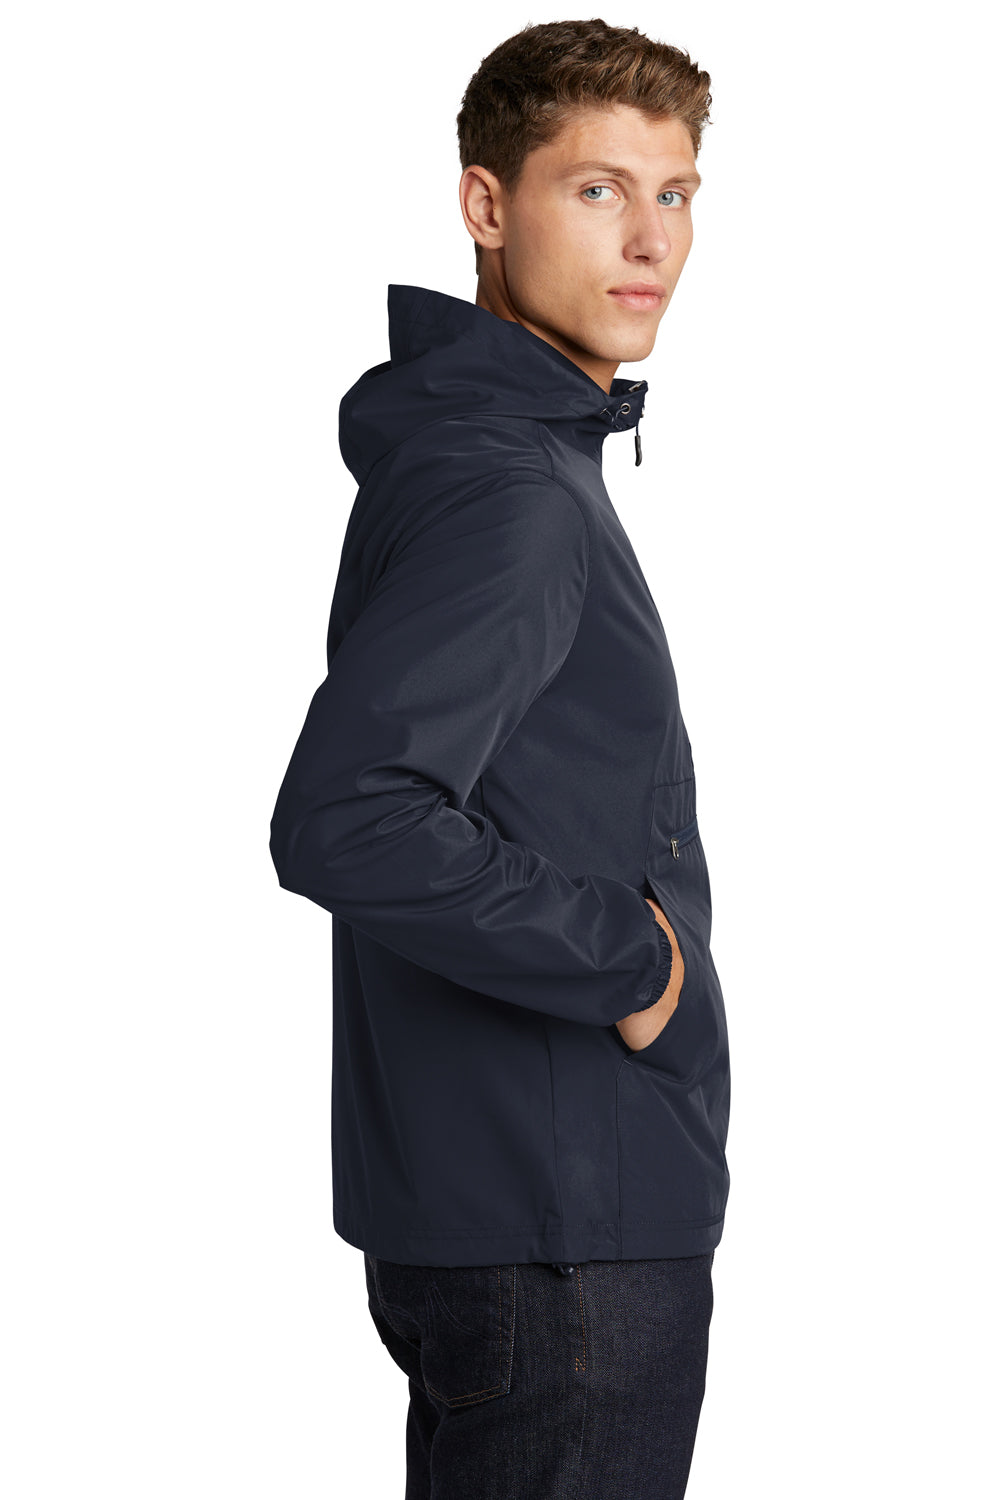 Sport-Tek Mens Packable Anorak Hooded Jacket True Navy Blue Side